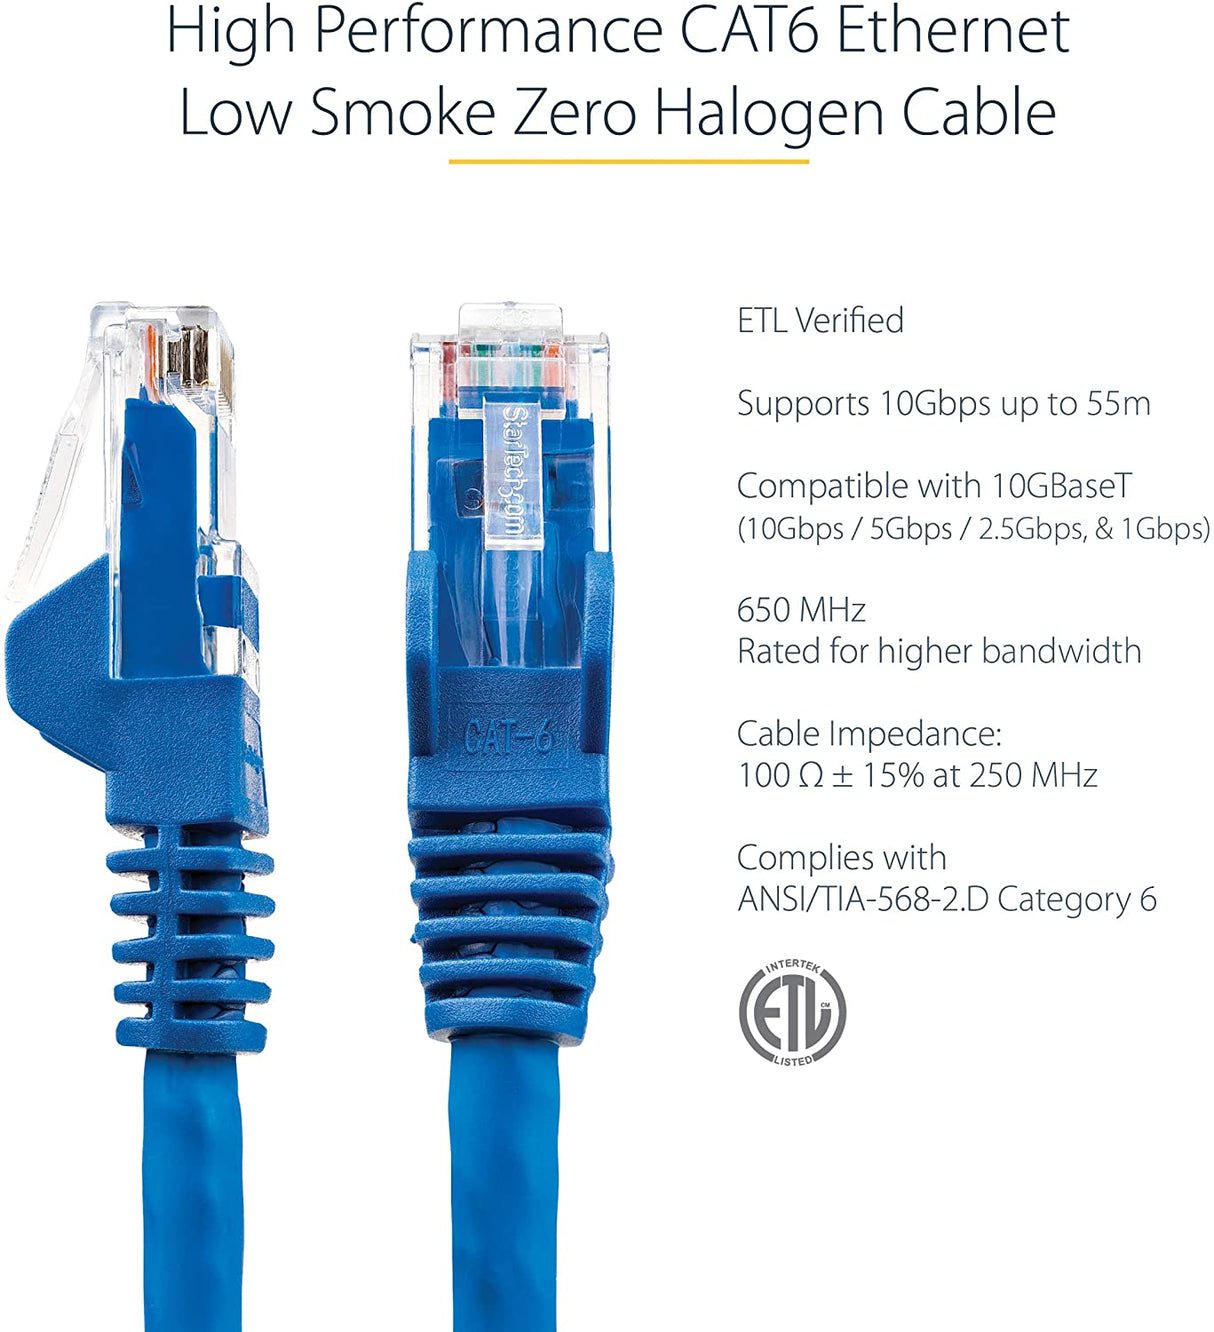 StarTech.com 20ft (6m) CAT6 Ethernet Cable - LSZH (Low Smoke Zero Halogen) - 10 Gigabit 650MHz 100W PoE RJ45 UTP Network Patch Cord Snagless w/Strain Relief - Blue CAT 6, ETL Verified (N6LPATCH20BL) 20 ft Blue